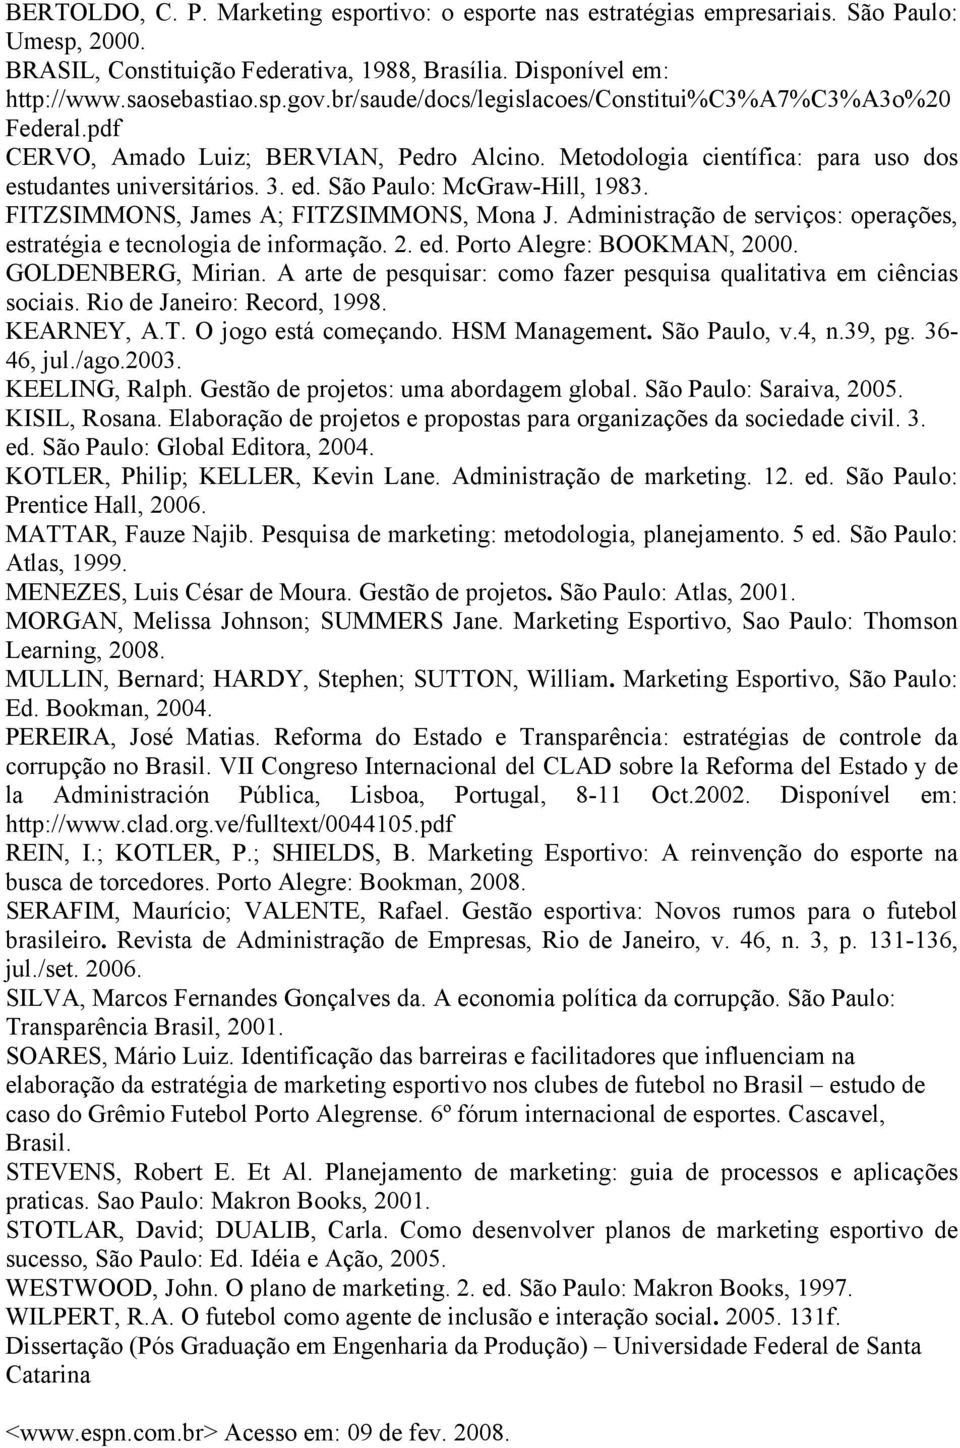 São Paulo: McGraw-Hill, 1983. FITZSIMMONS, James A; FITZSIMMONS, Mona J. Administração de serviços: operações, estratégia e tecnologia de informação. 2. ed. Porto Alegre: BOOKMAN, 2000.